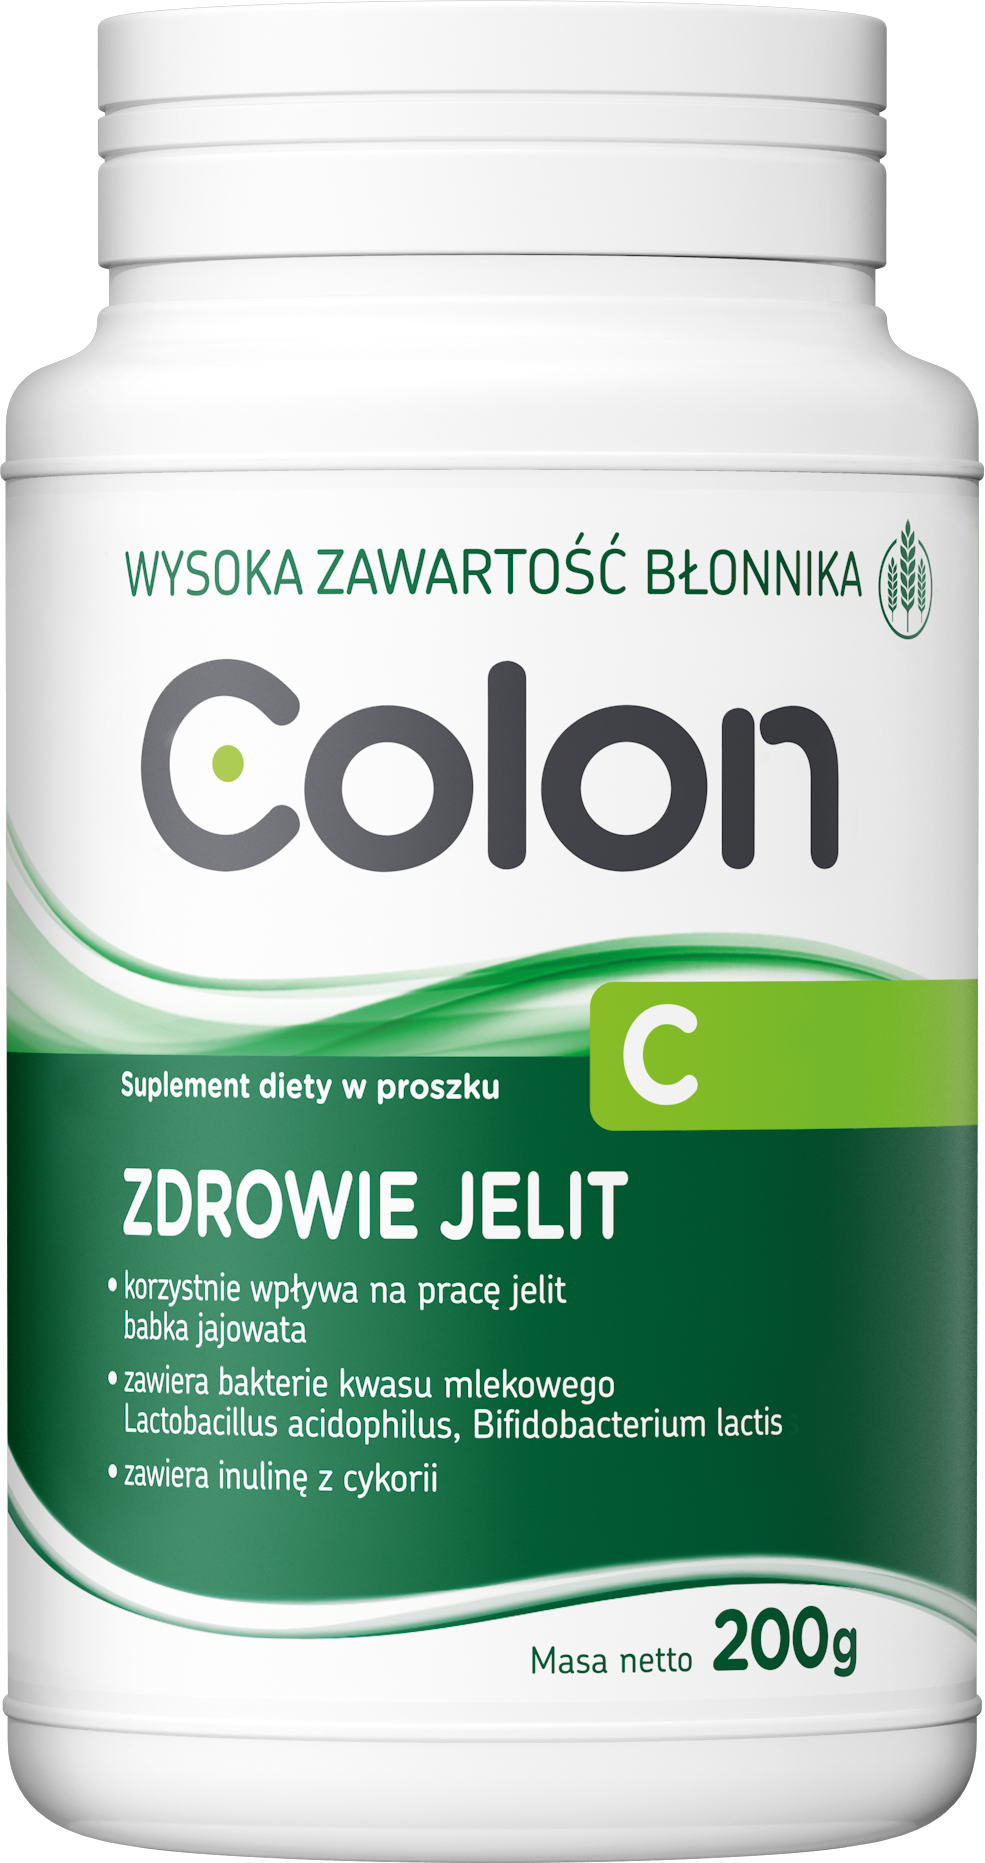 Colon C zdrowie jelit 200g